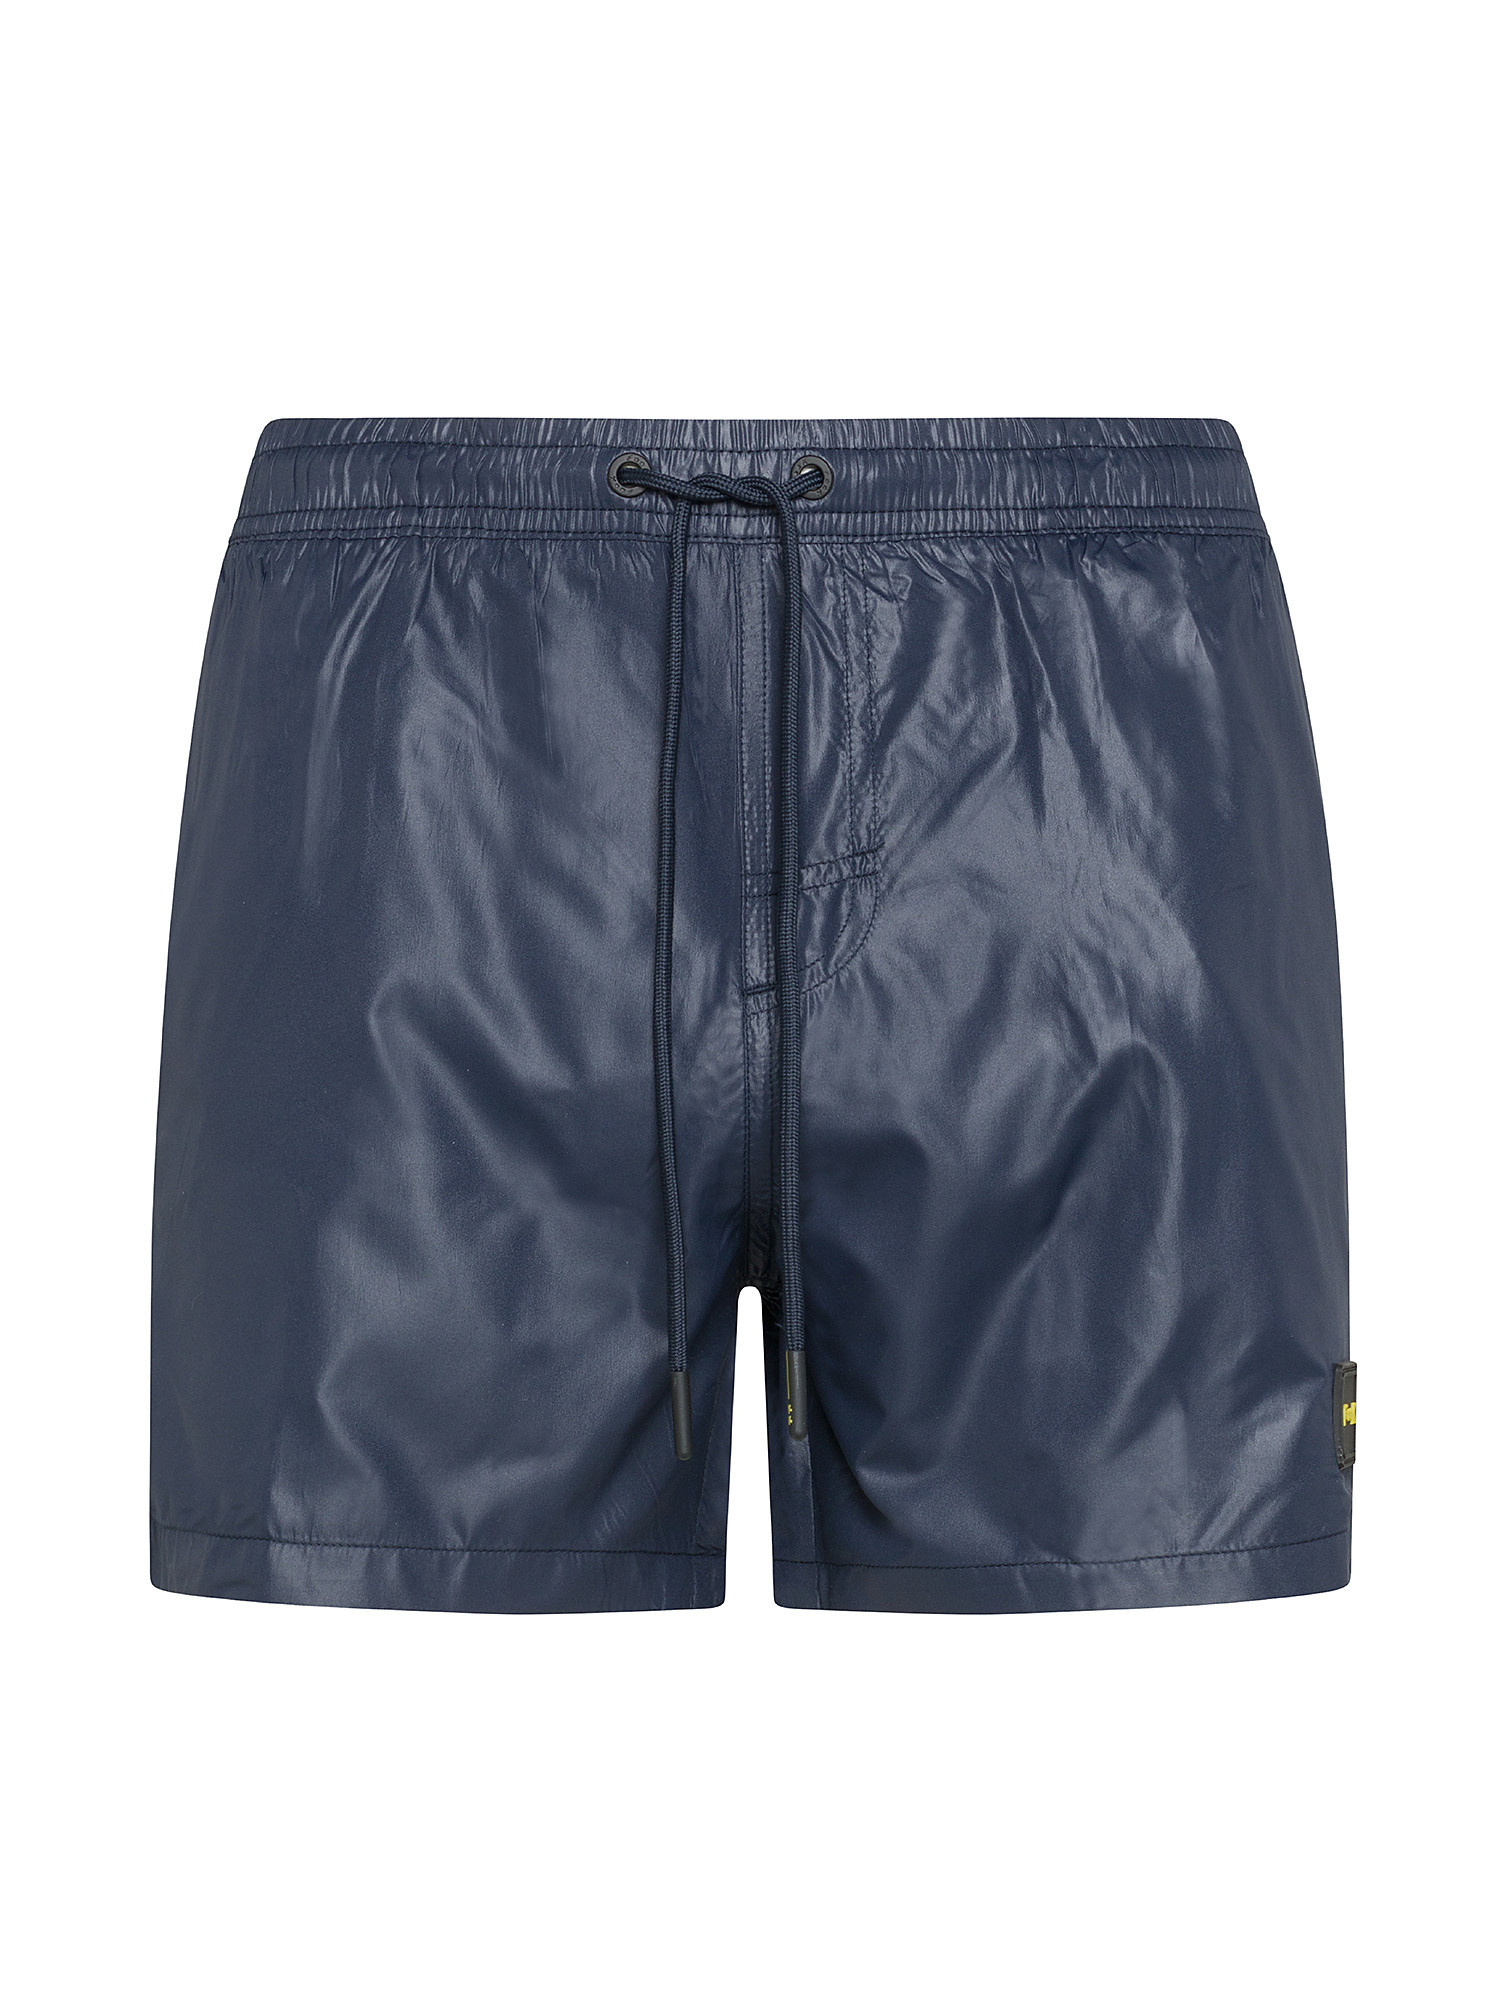 F**K - Shiny swim shorts, Dark Blue, large image number 0